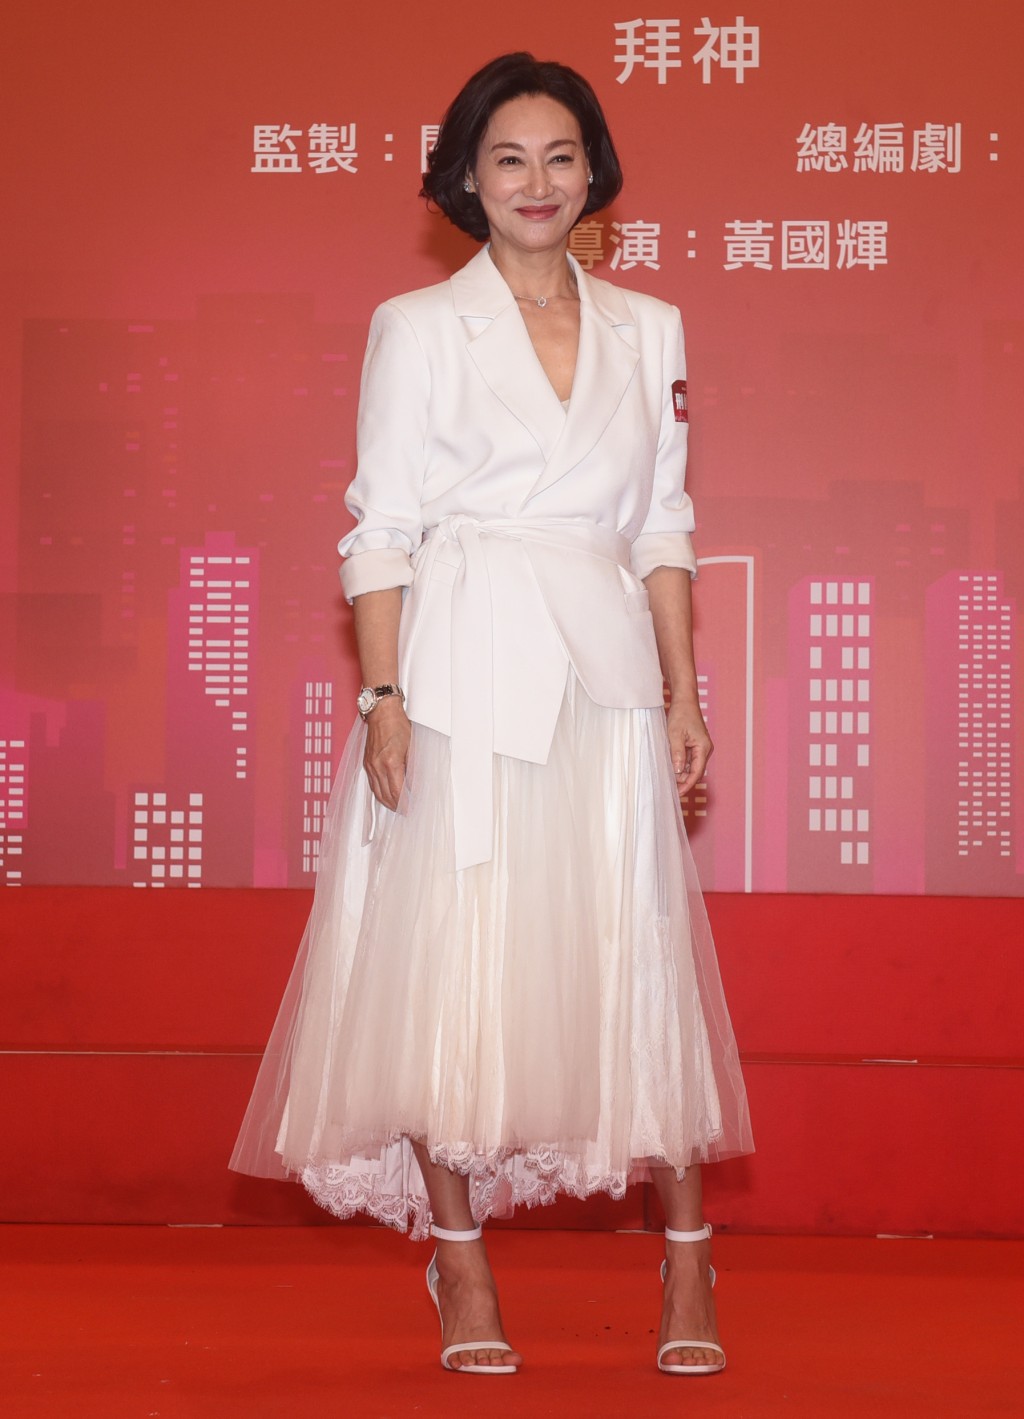 64岁的惠英红在影视界都获奖无数。